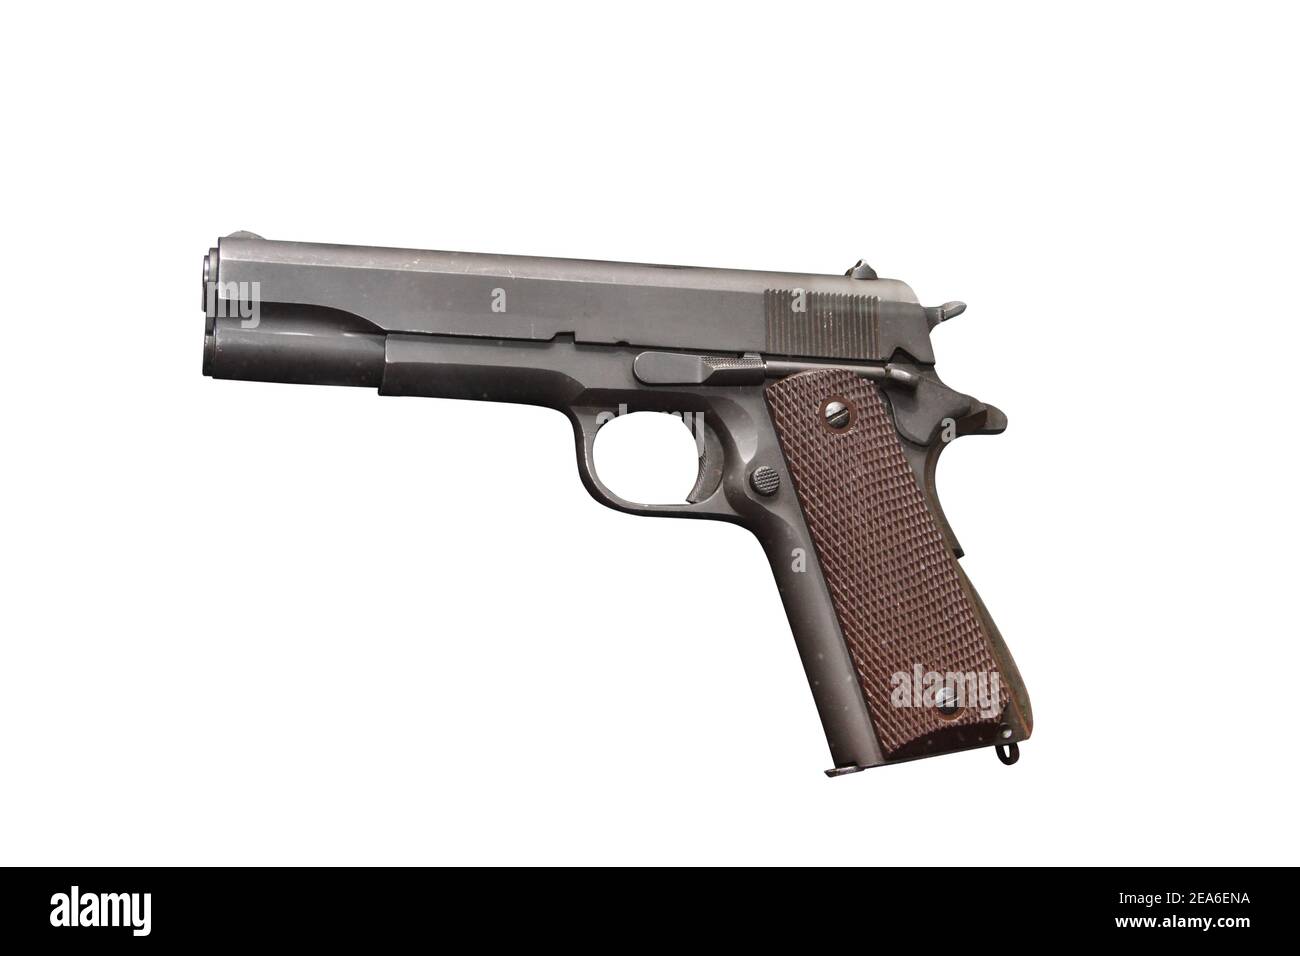 US Army Pistol Colt M1911 A1 modello di governo nei primi anni 1920, il modello base Colt M1911 è stato leggermente modificato. Il nuovo modello ha ricevuto il prou Foto Stock